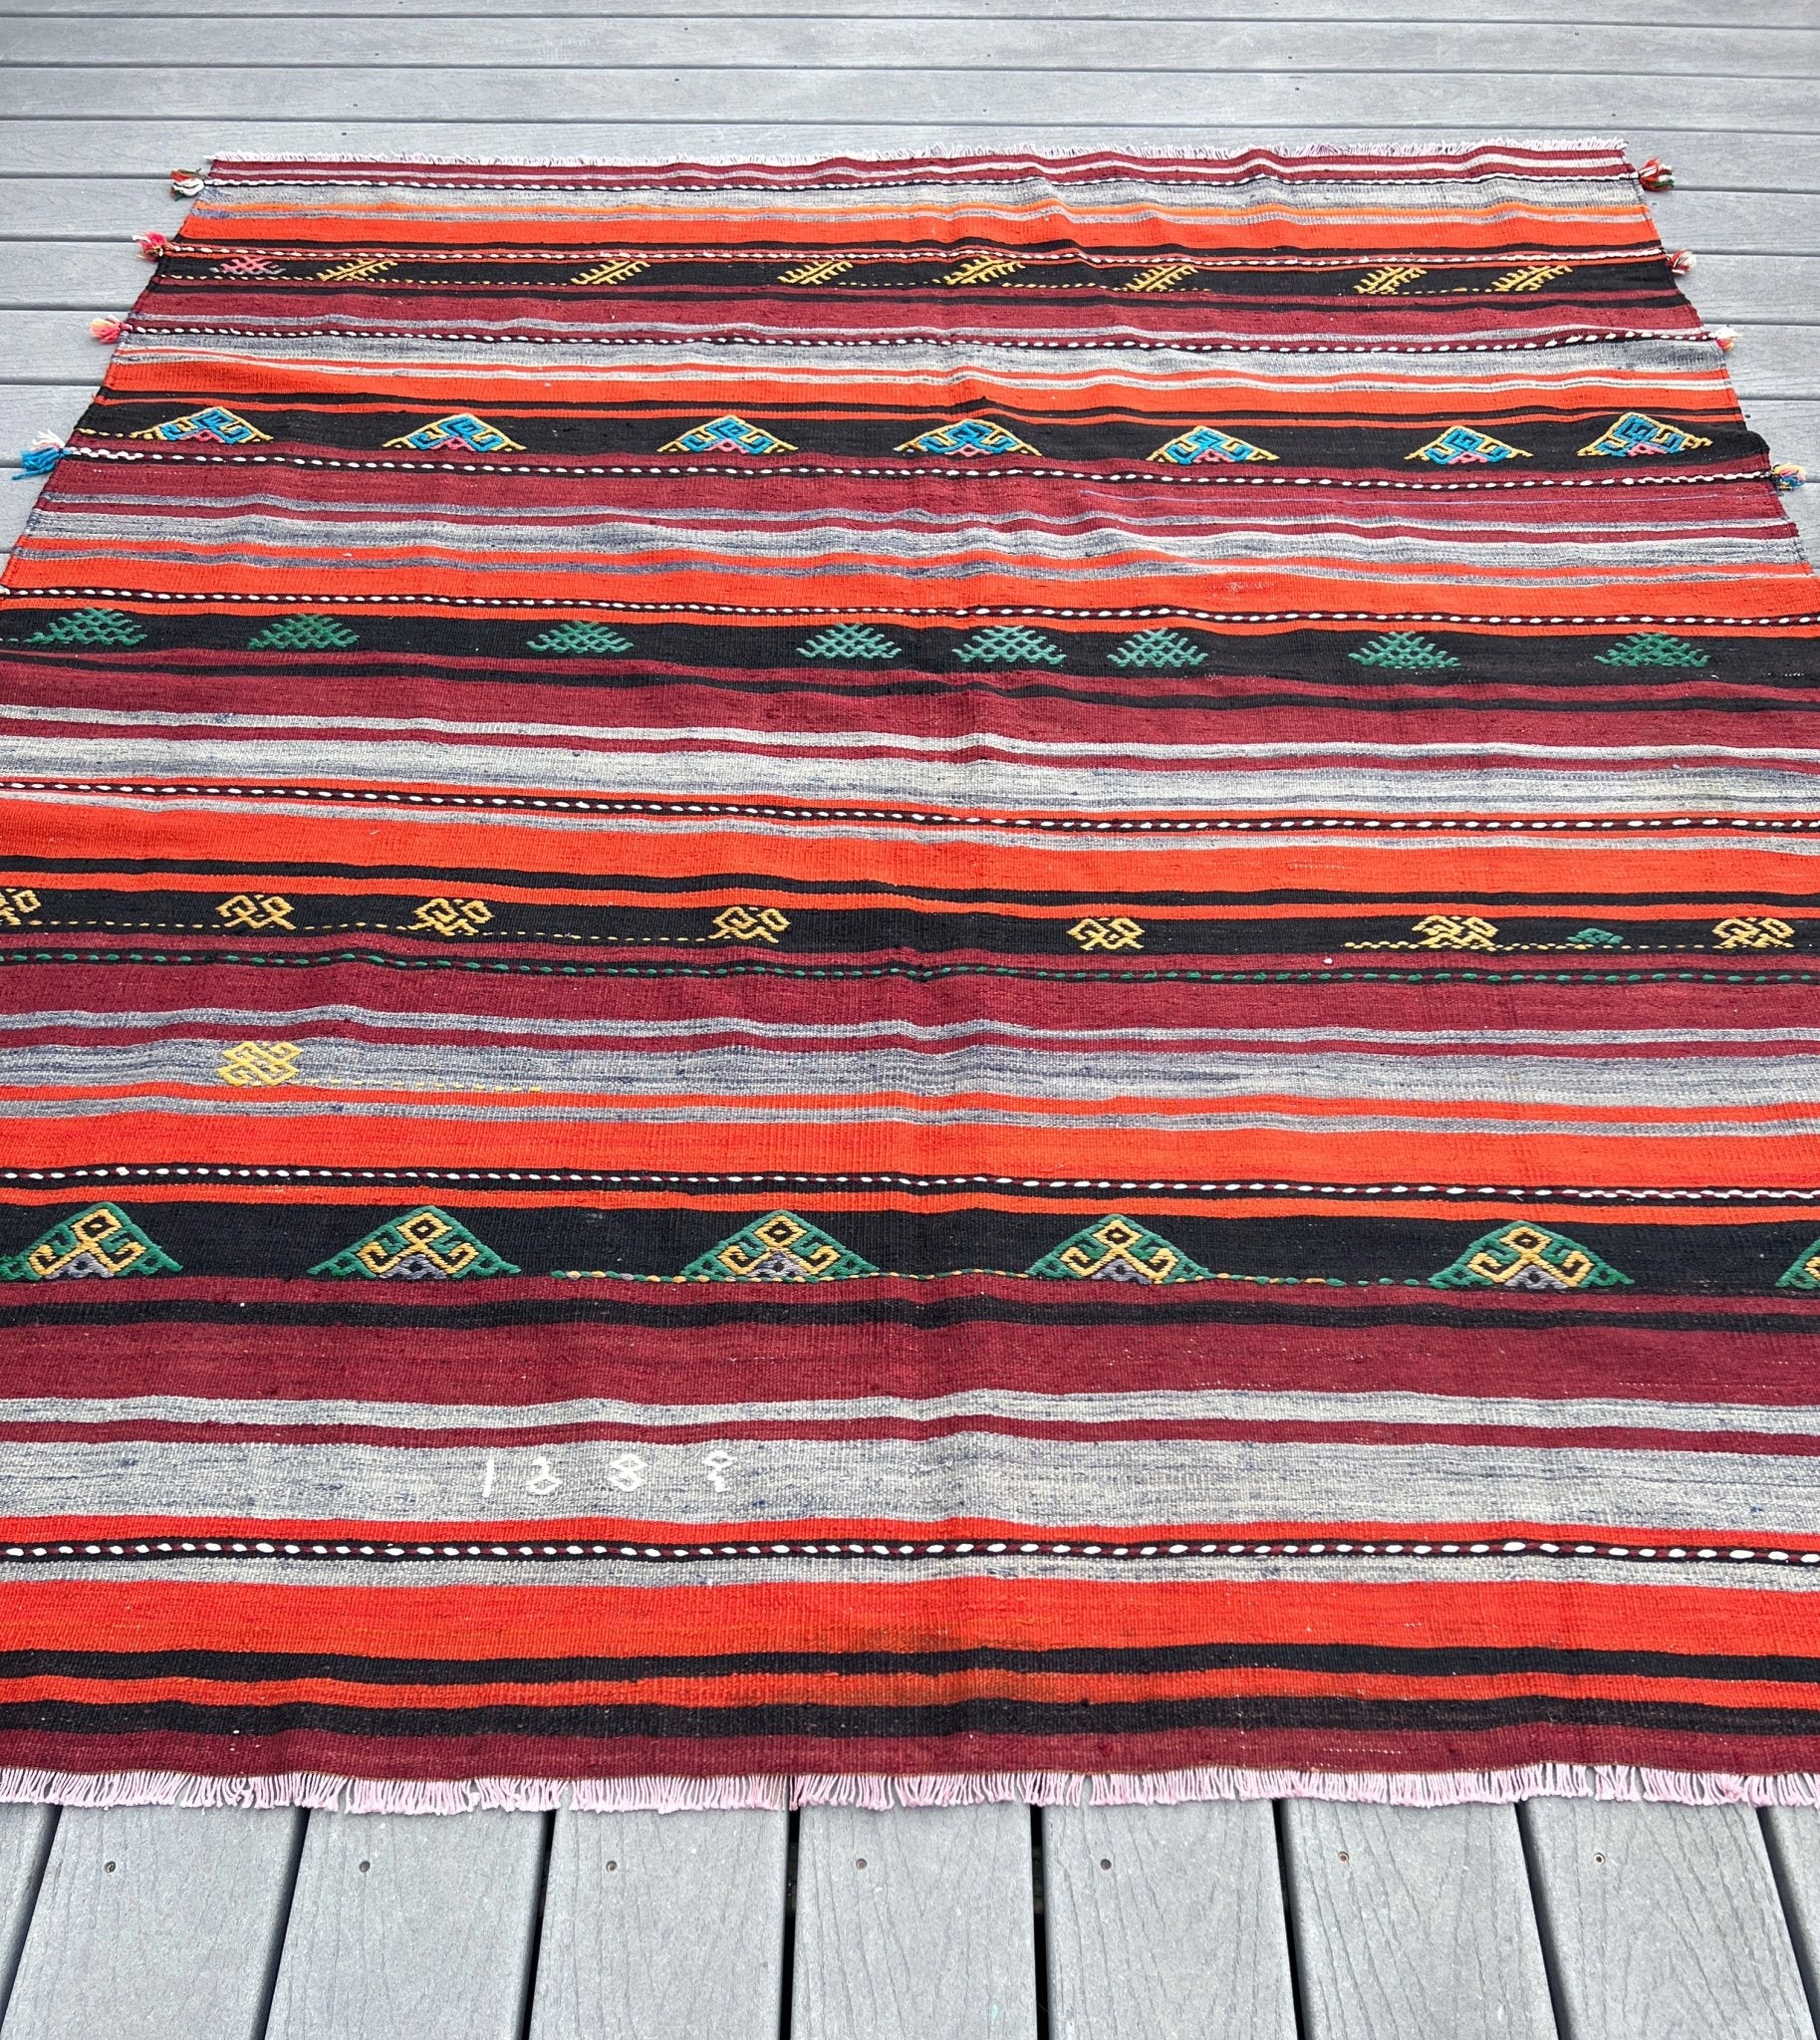 Sivas handmade wool Vintage Turkish Kilim Rug shop los latos los gatos palo altos. Vintage rug shop berkeley SF bay area